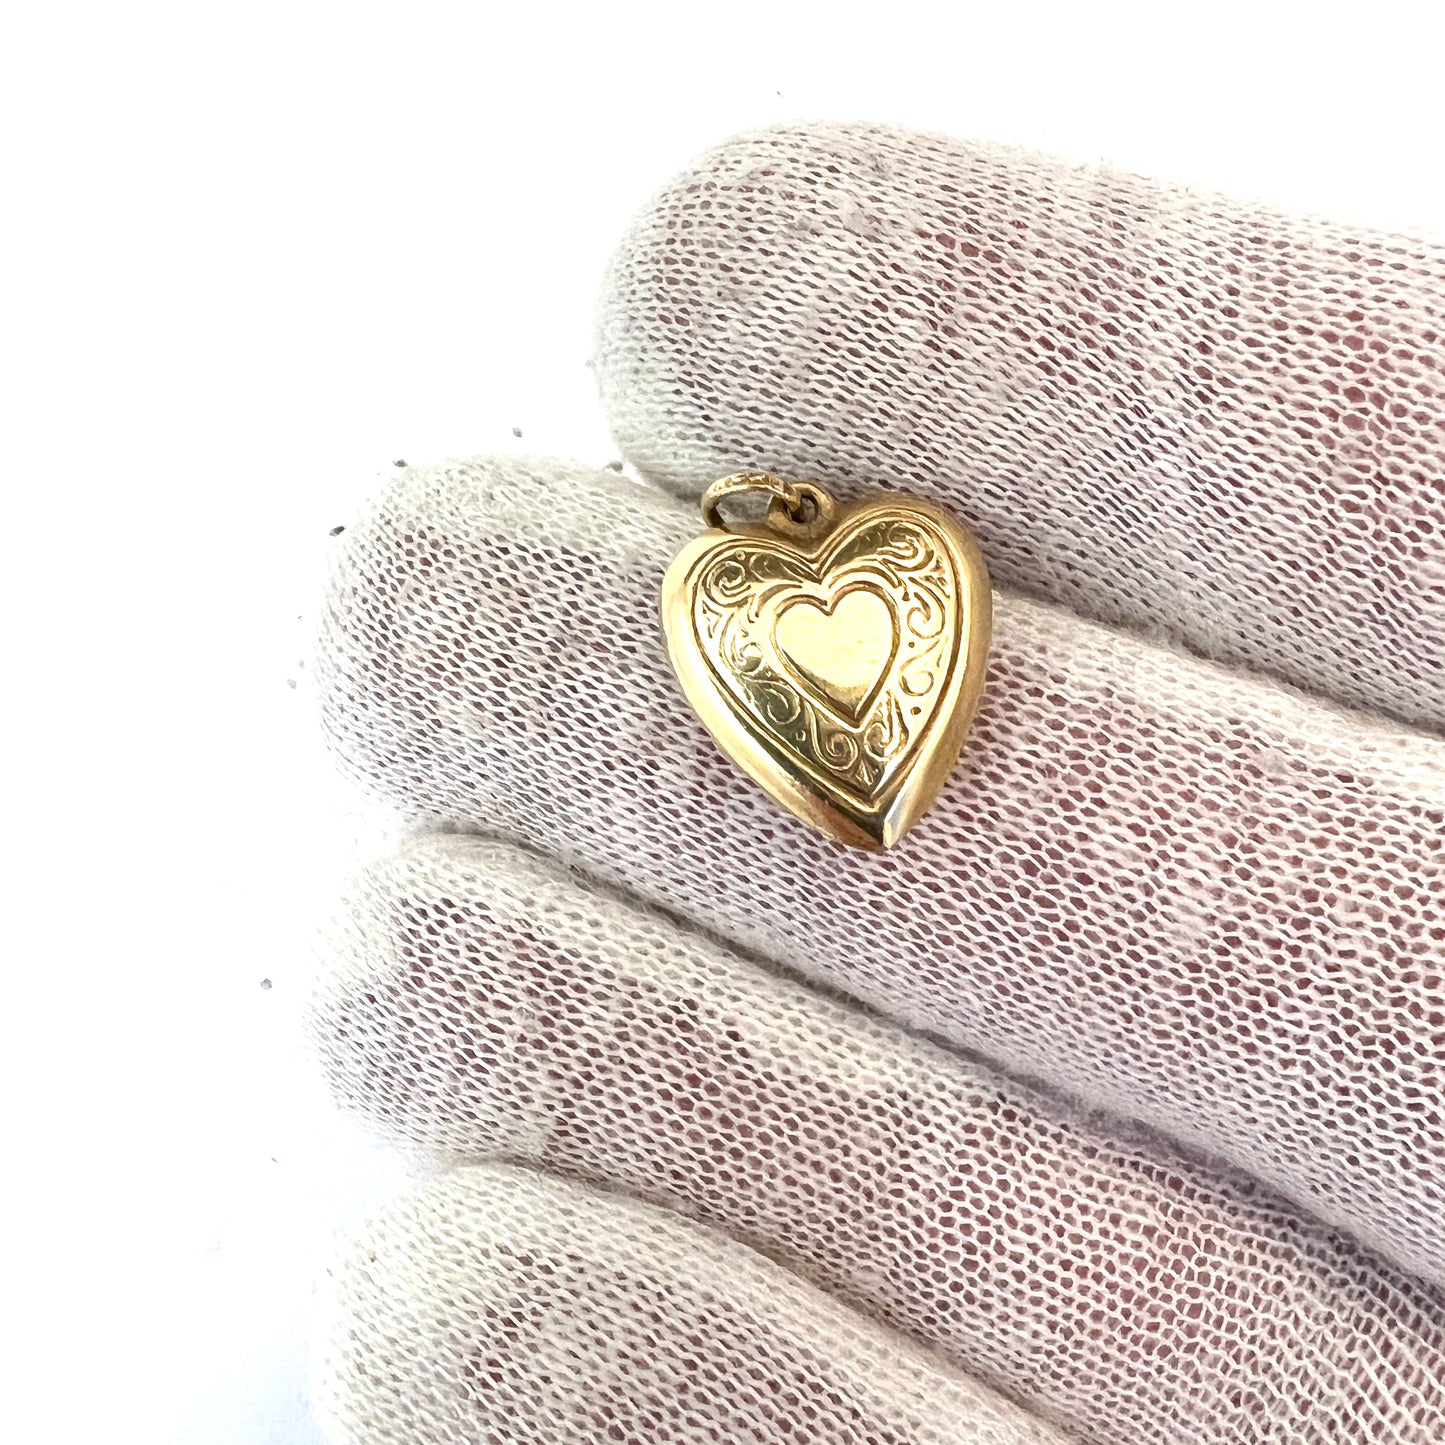 Stockholm, Sweden 1962. Vintage 18k Gold Puffy Heart Pendant Charm